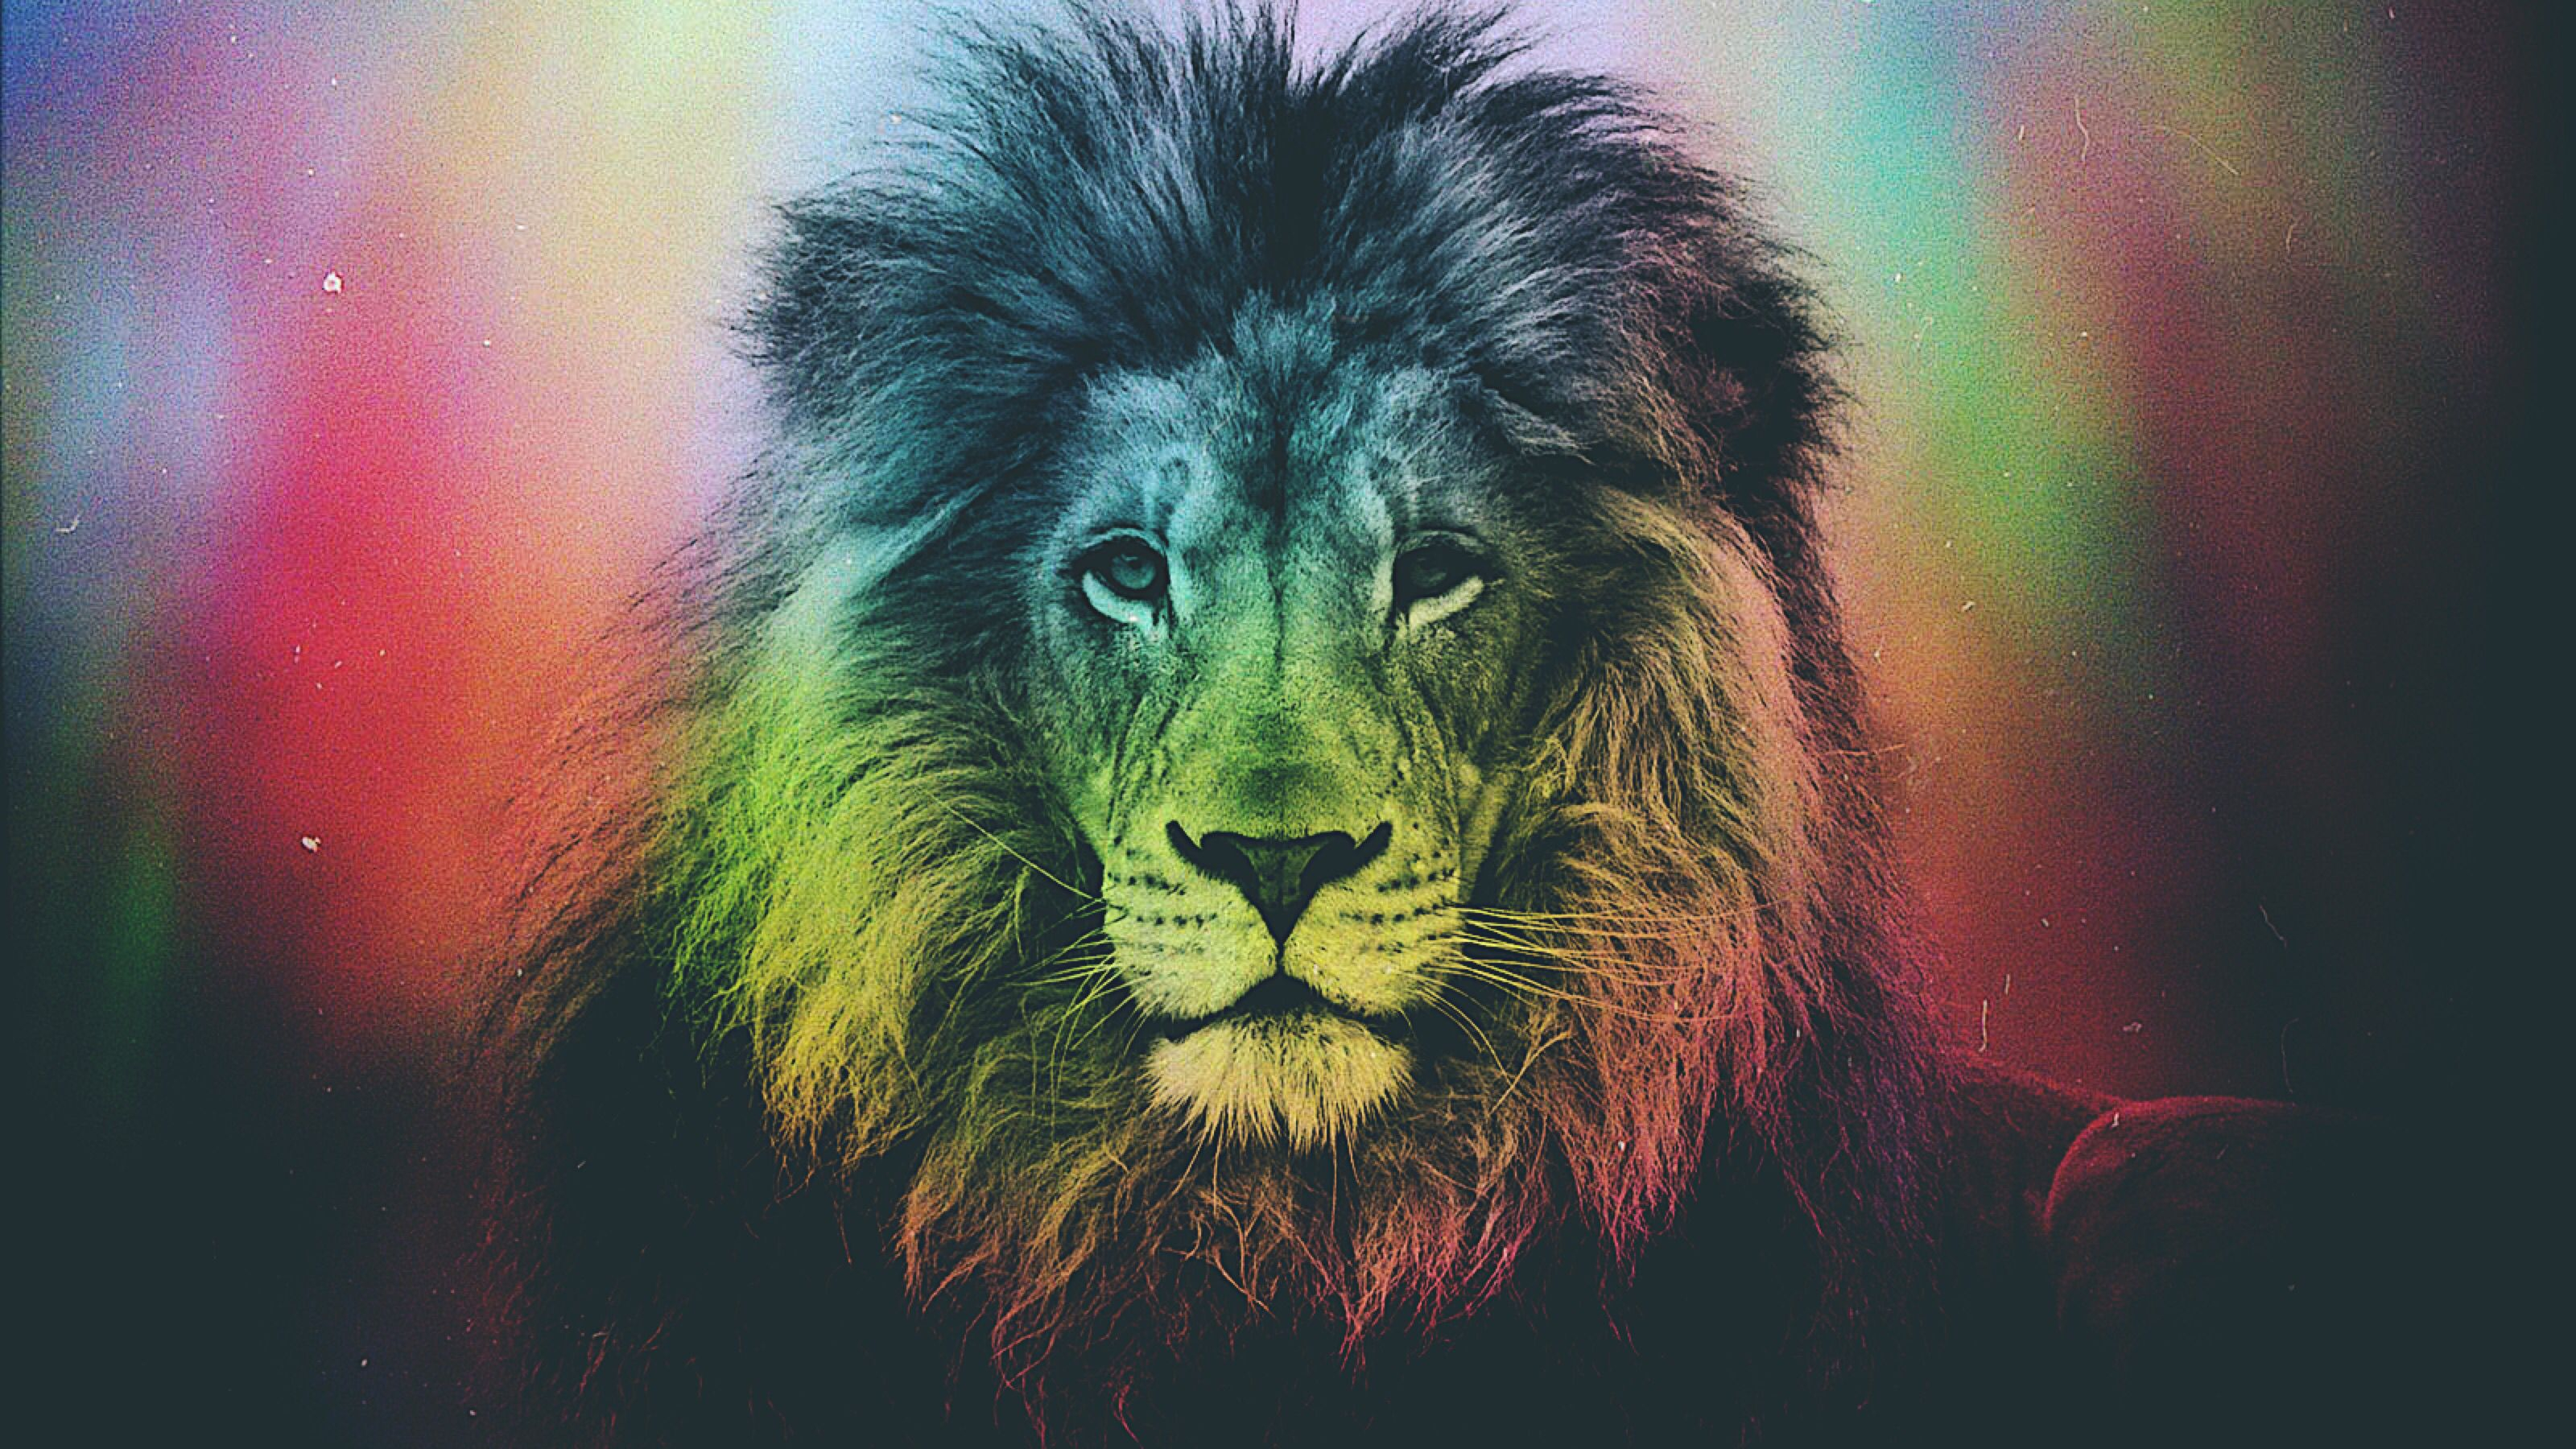 3200x1800 Rainbow lion picture | Lion pictures, Rainbow lion, Animal art